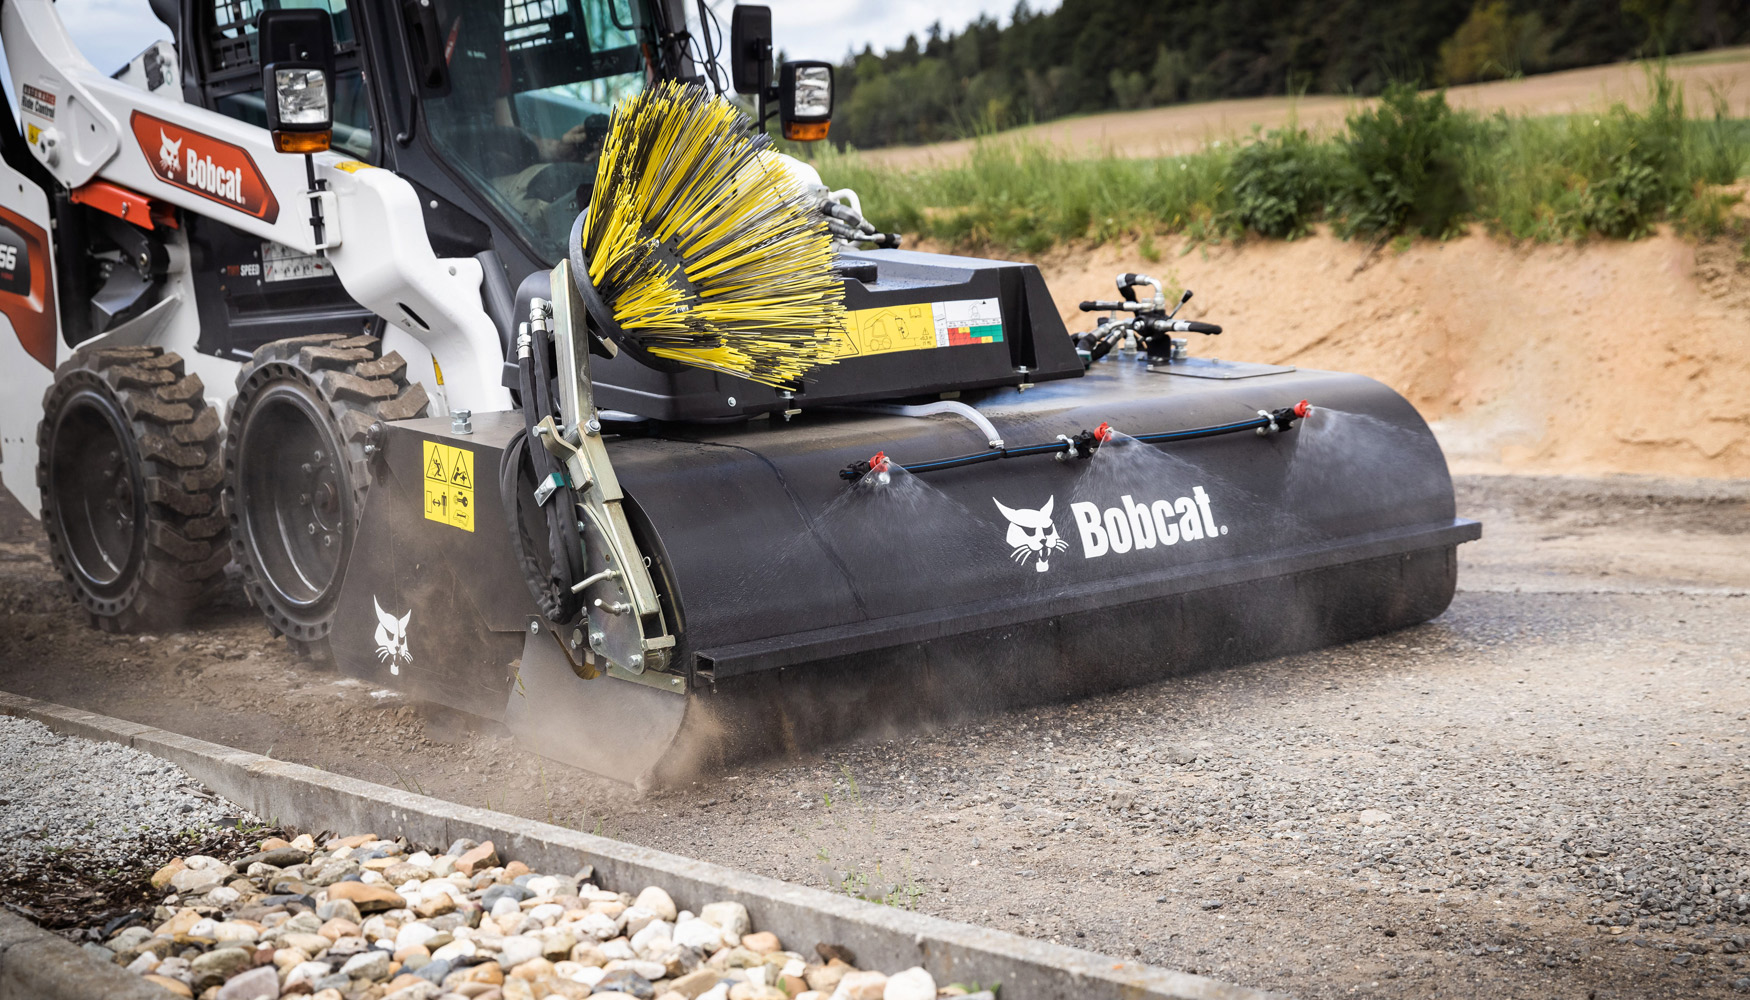 Las nuevas barredoras Bobcat no solo destacan en las aplicaciones de carretera, sino que cubren una amplia gama de trabajos, desde la limpieza...